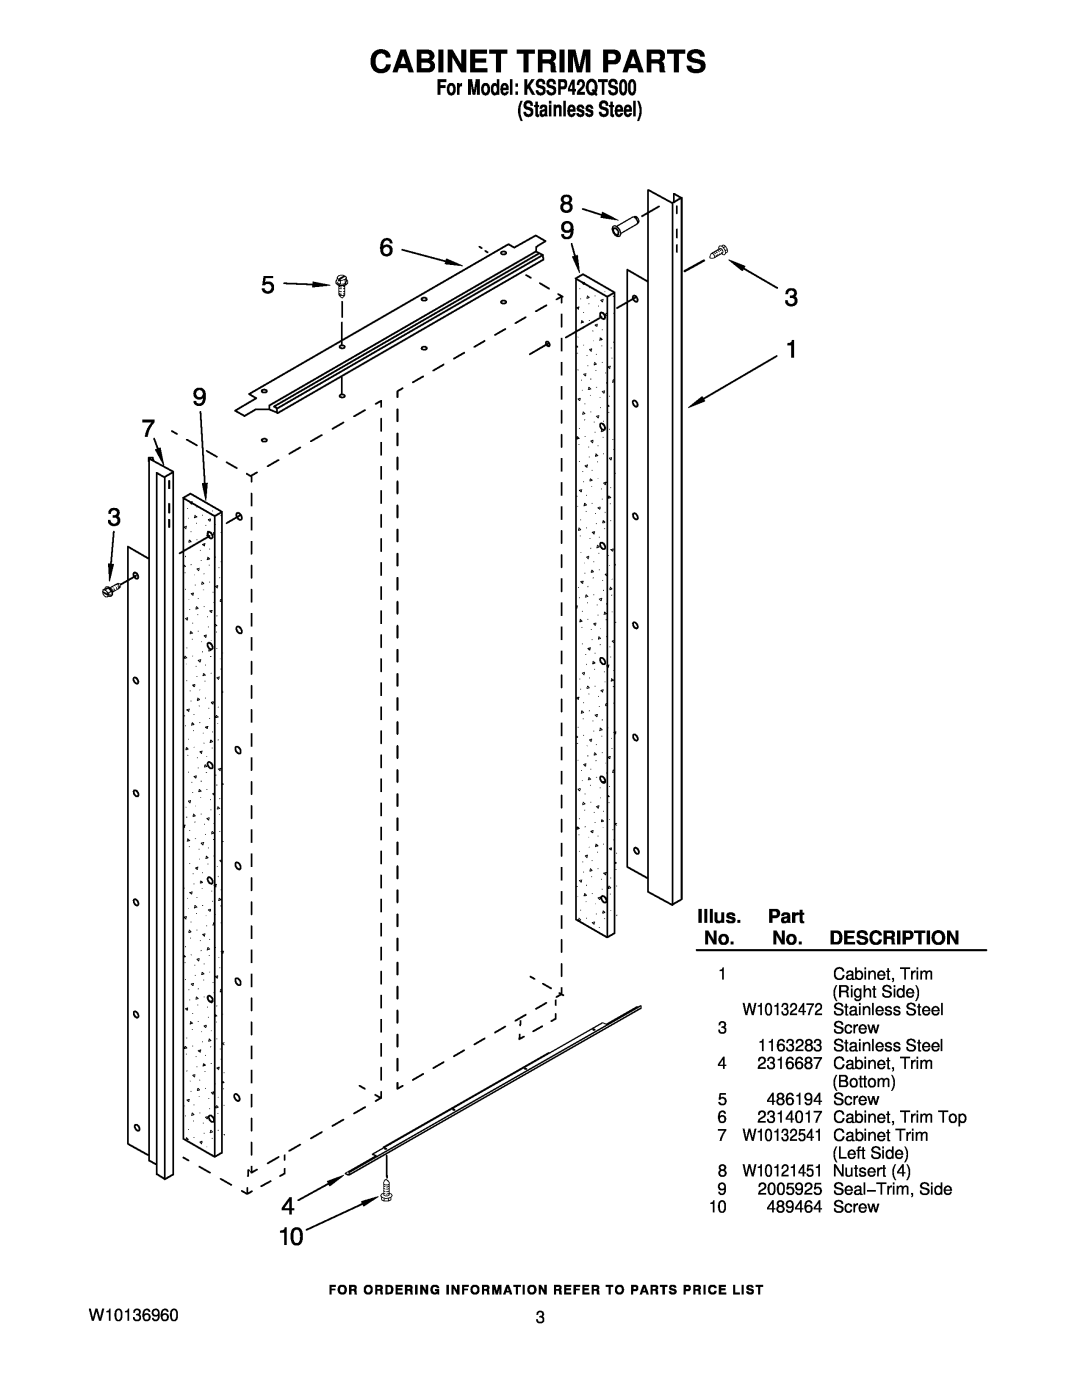 KitchenAid manual Cabinet Trim Parts, For Model KSSP42QTS00 Stainless Steel, Illus, Description 